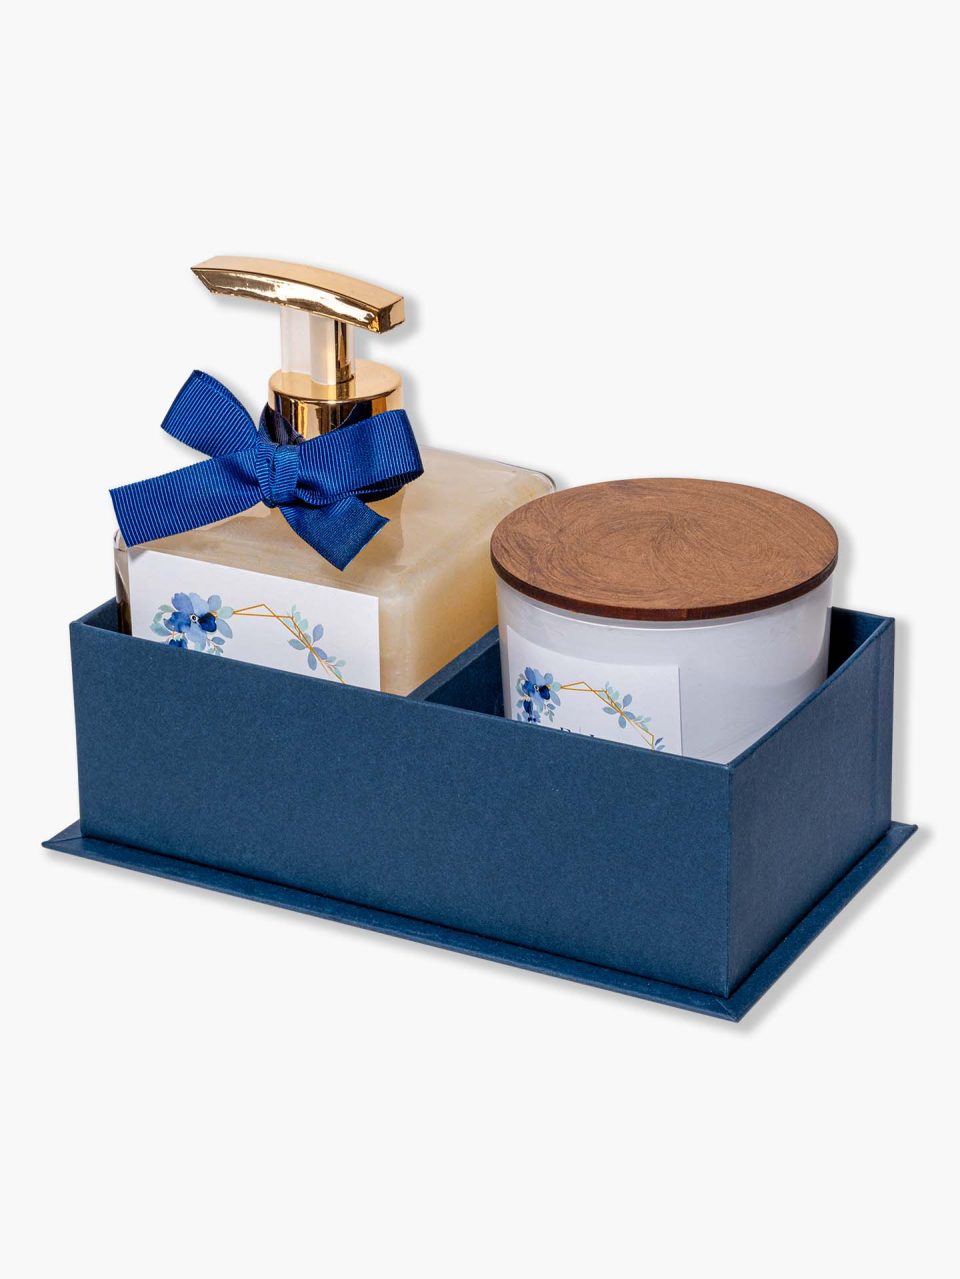 Kit Celebre V com sabonete, vela aromárica, caixa cartonada aberto